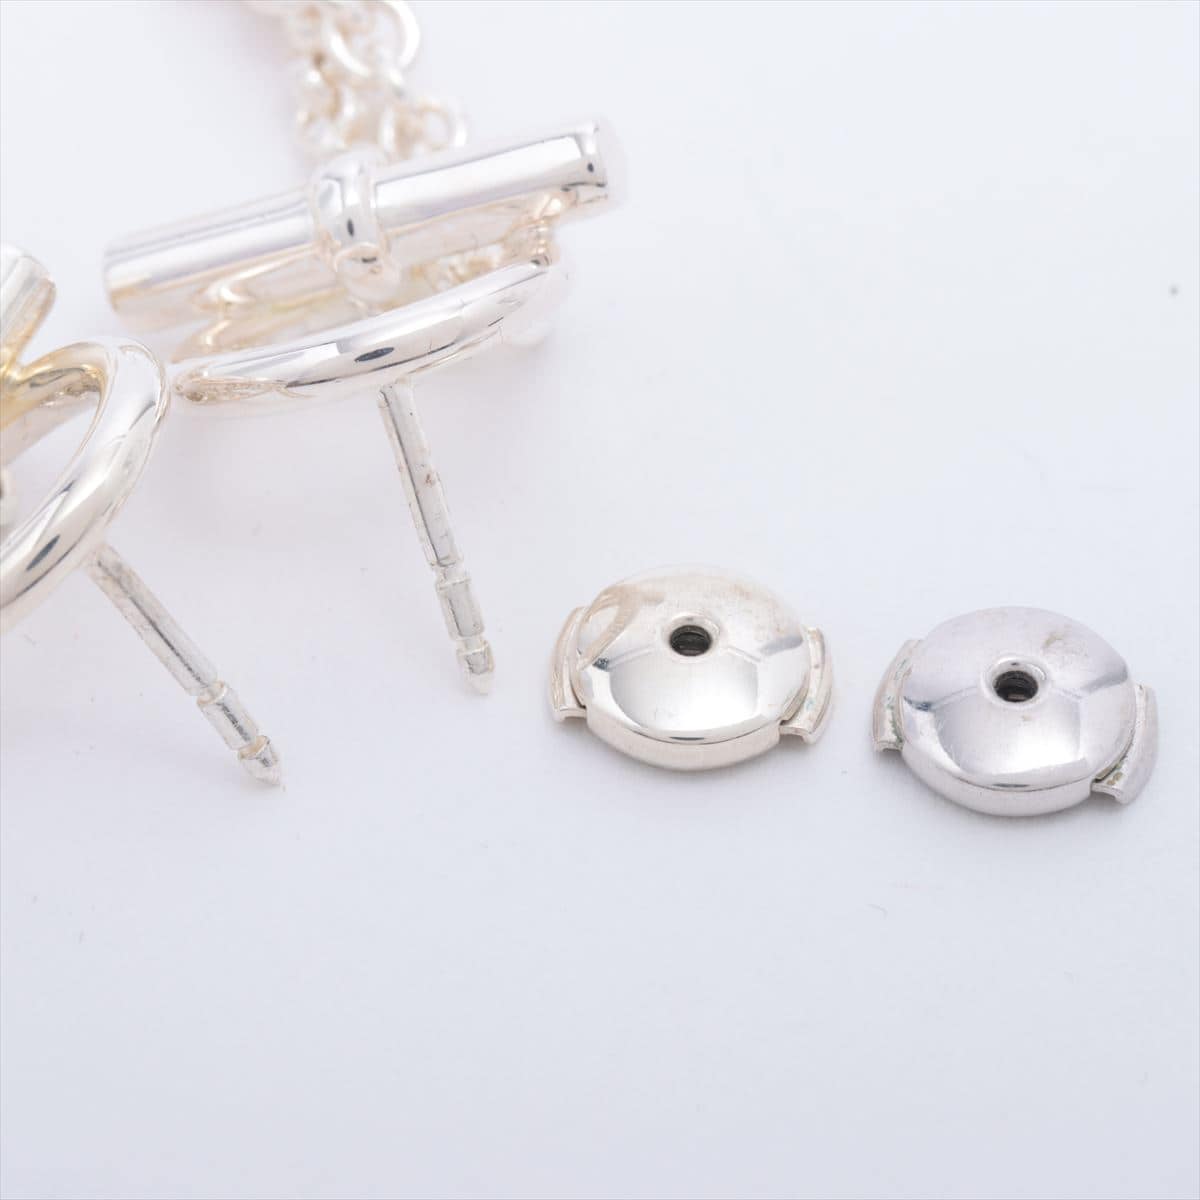 Hermès Chaîne d'Ancre Piercing jewelry 925 13.5g Silver